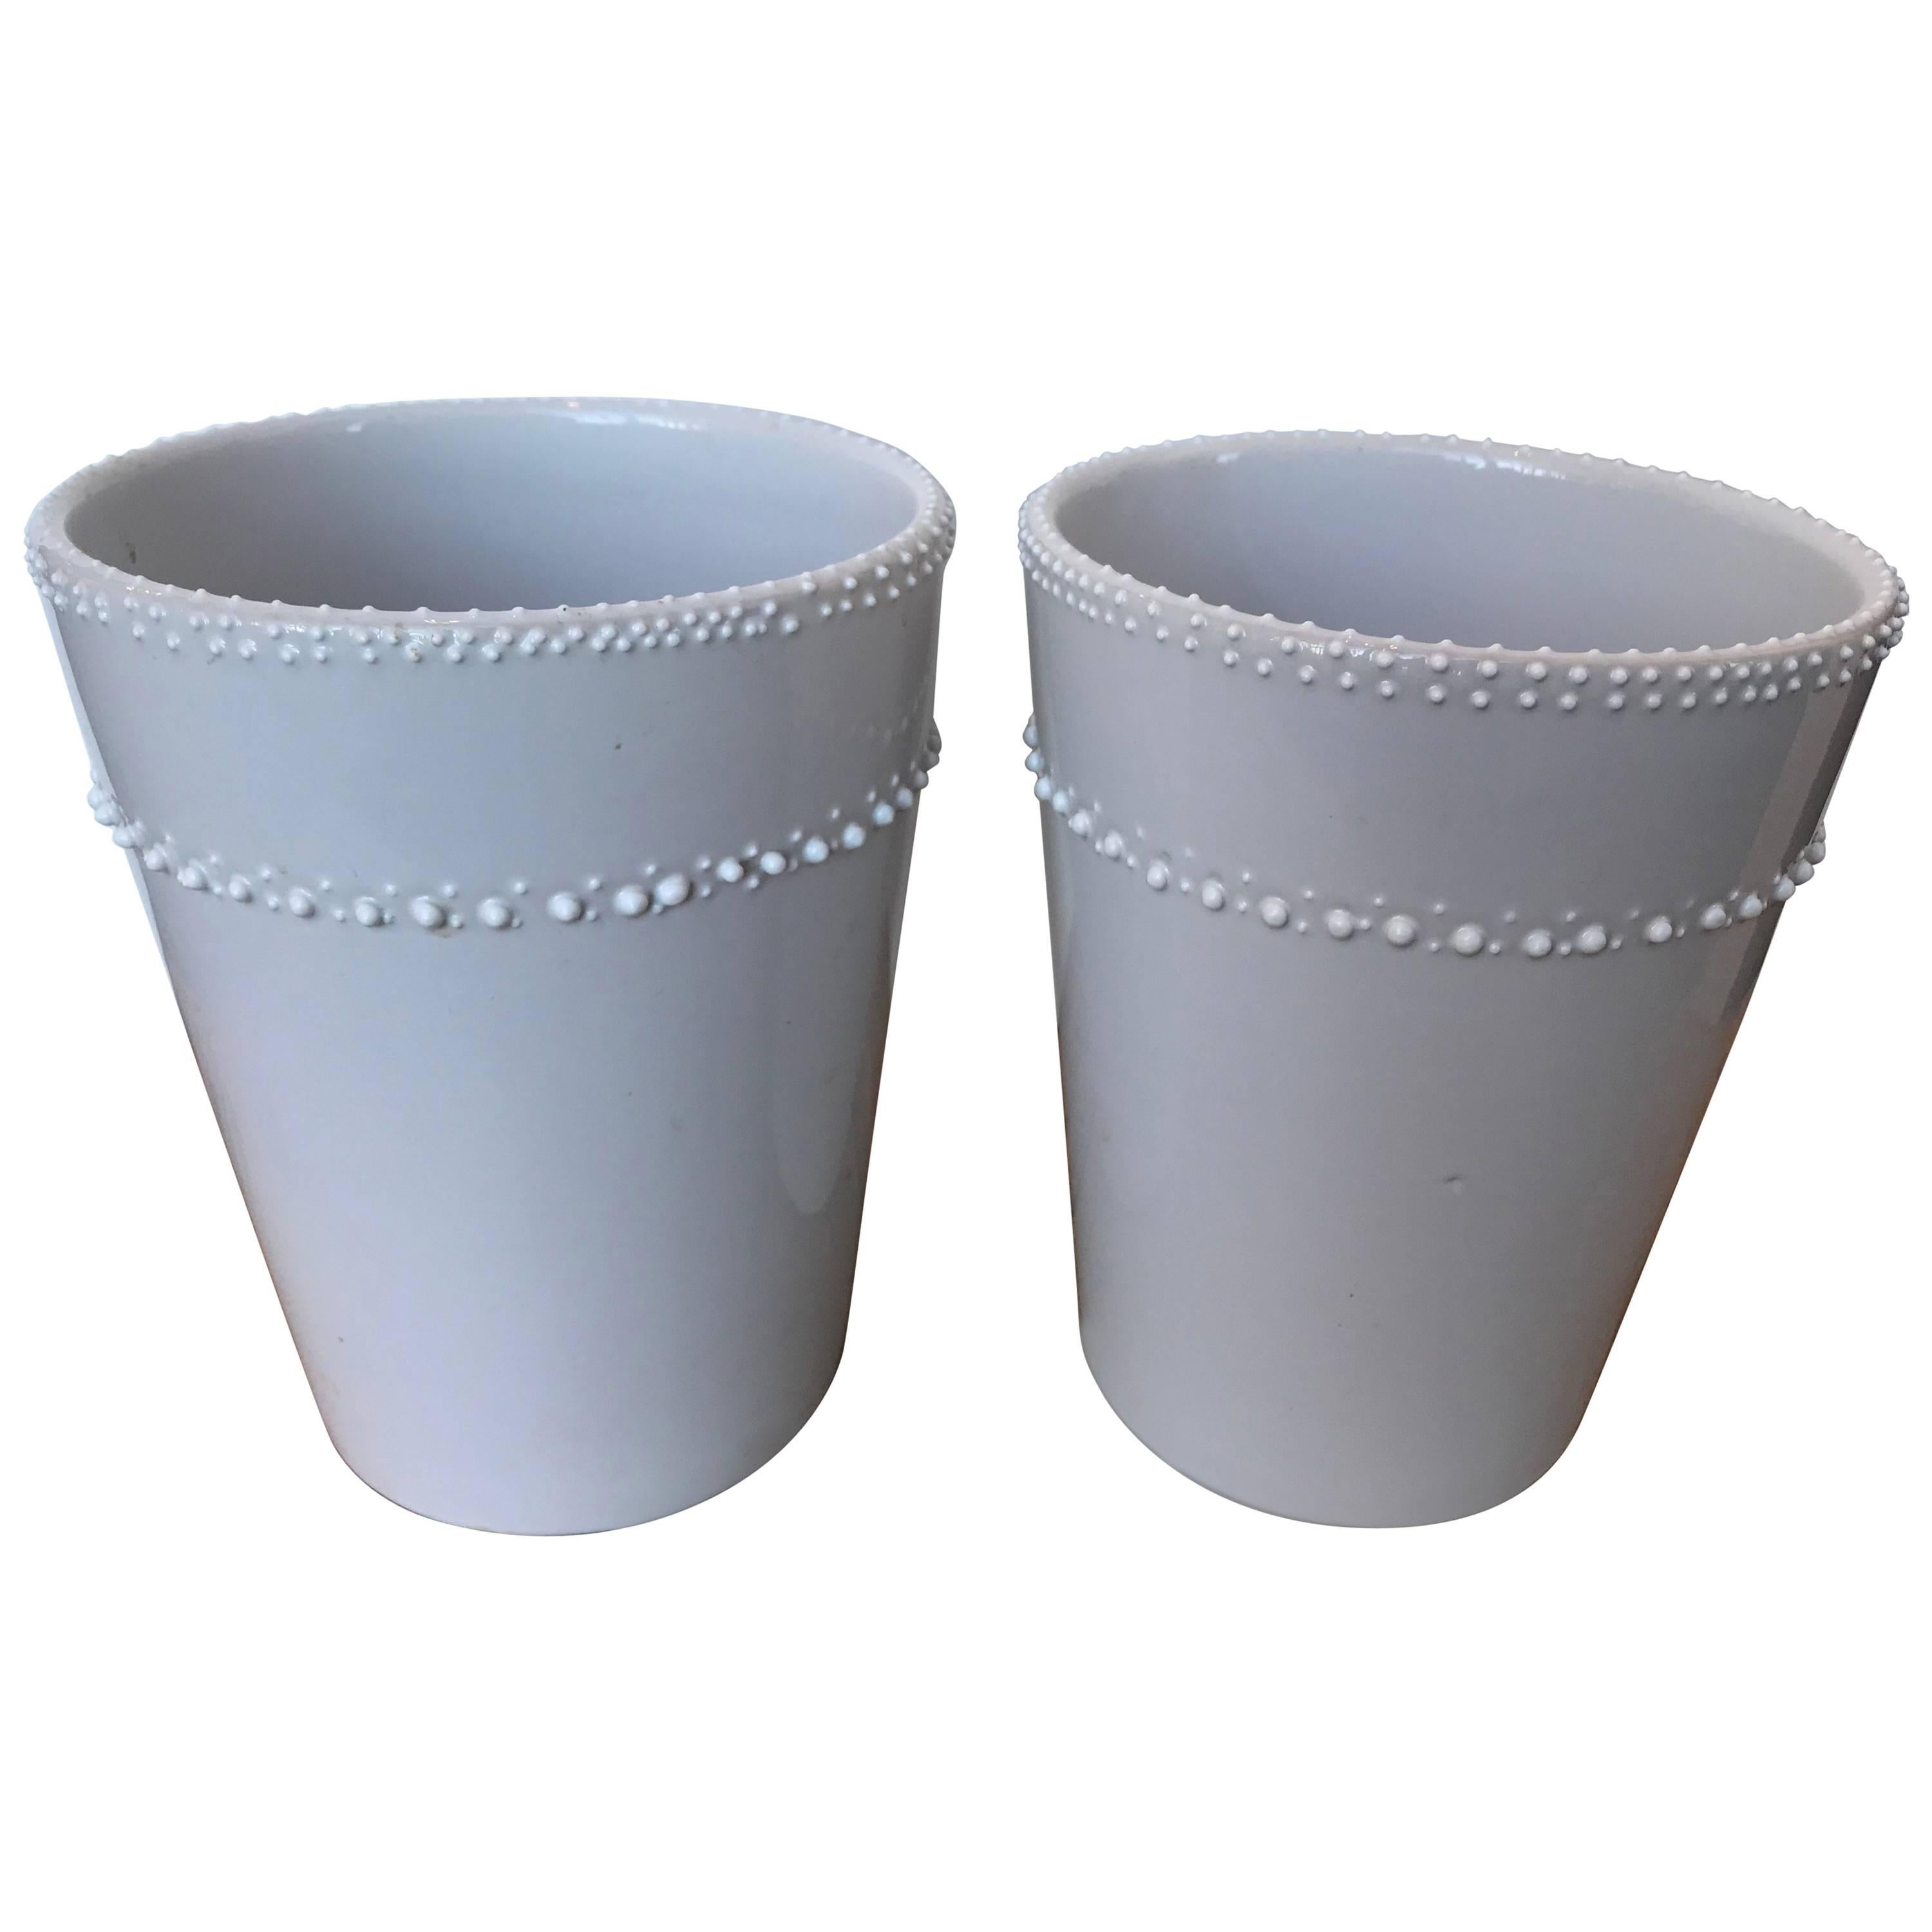 Pair of White Ceramic Vases/Cachepots